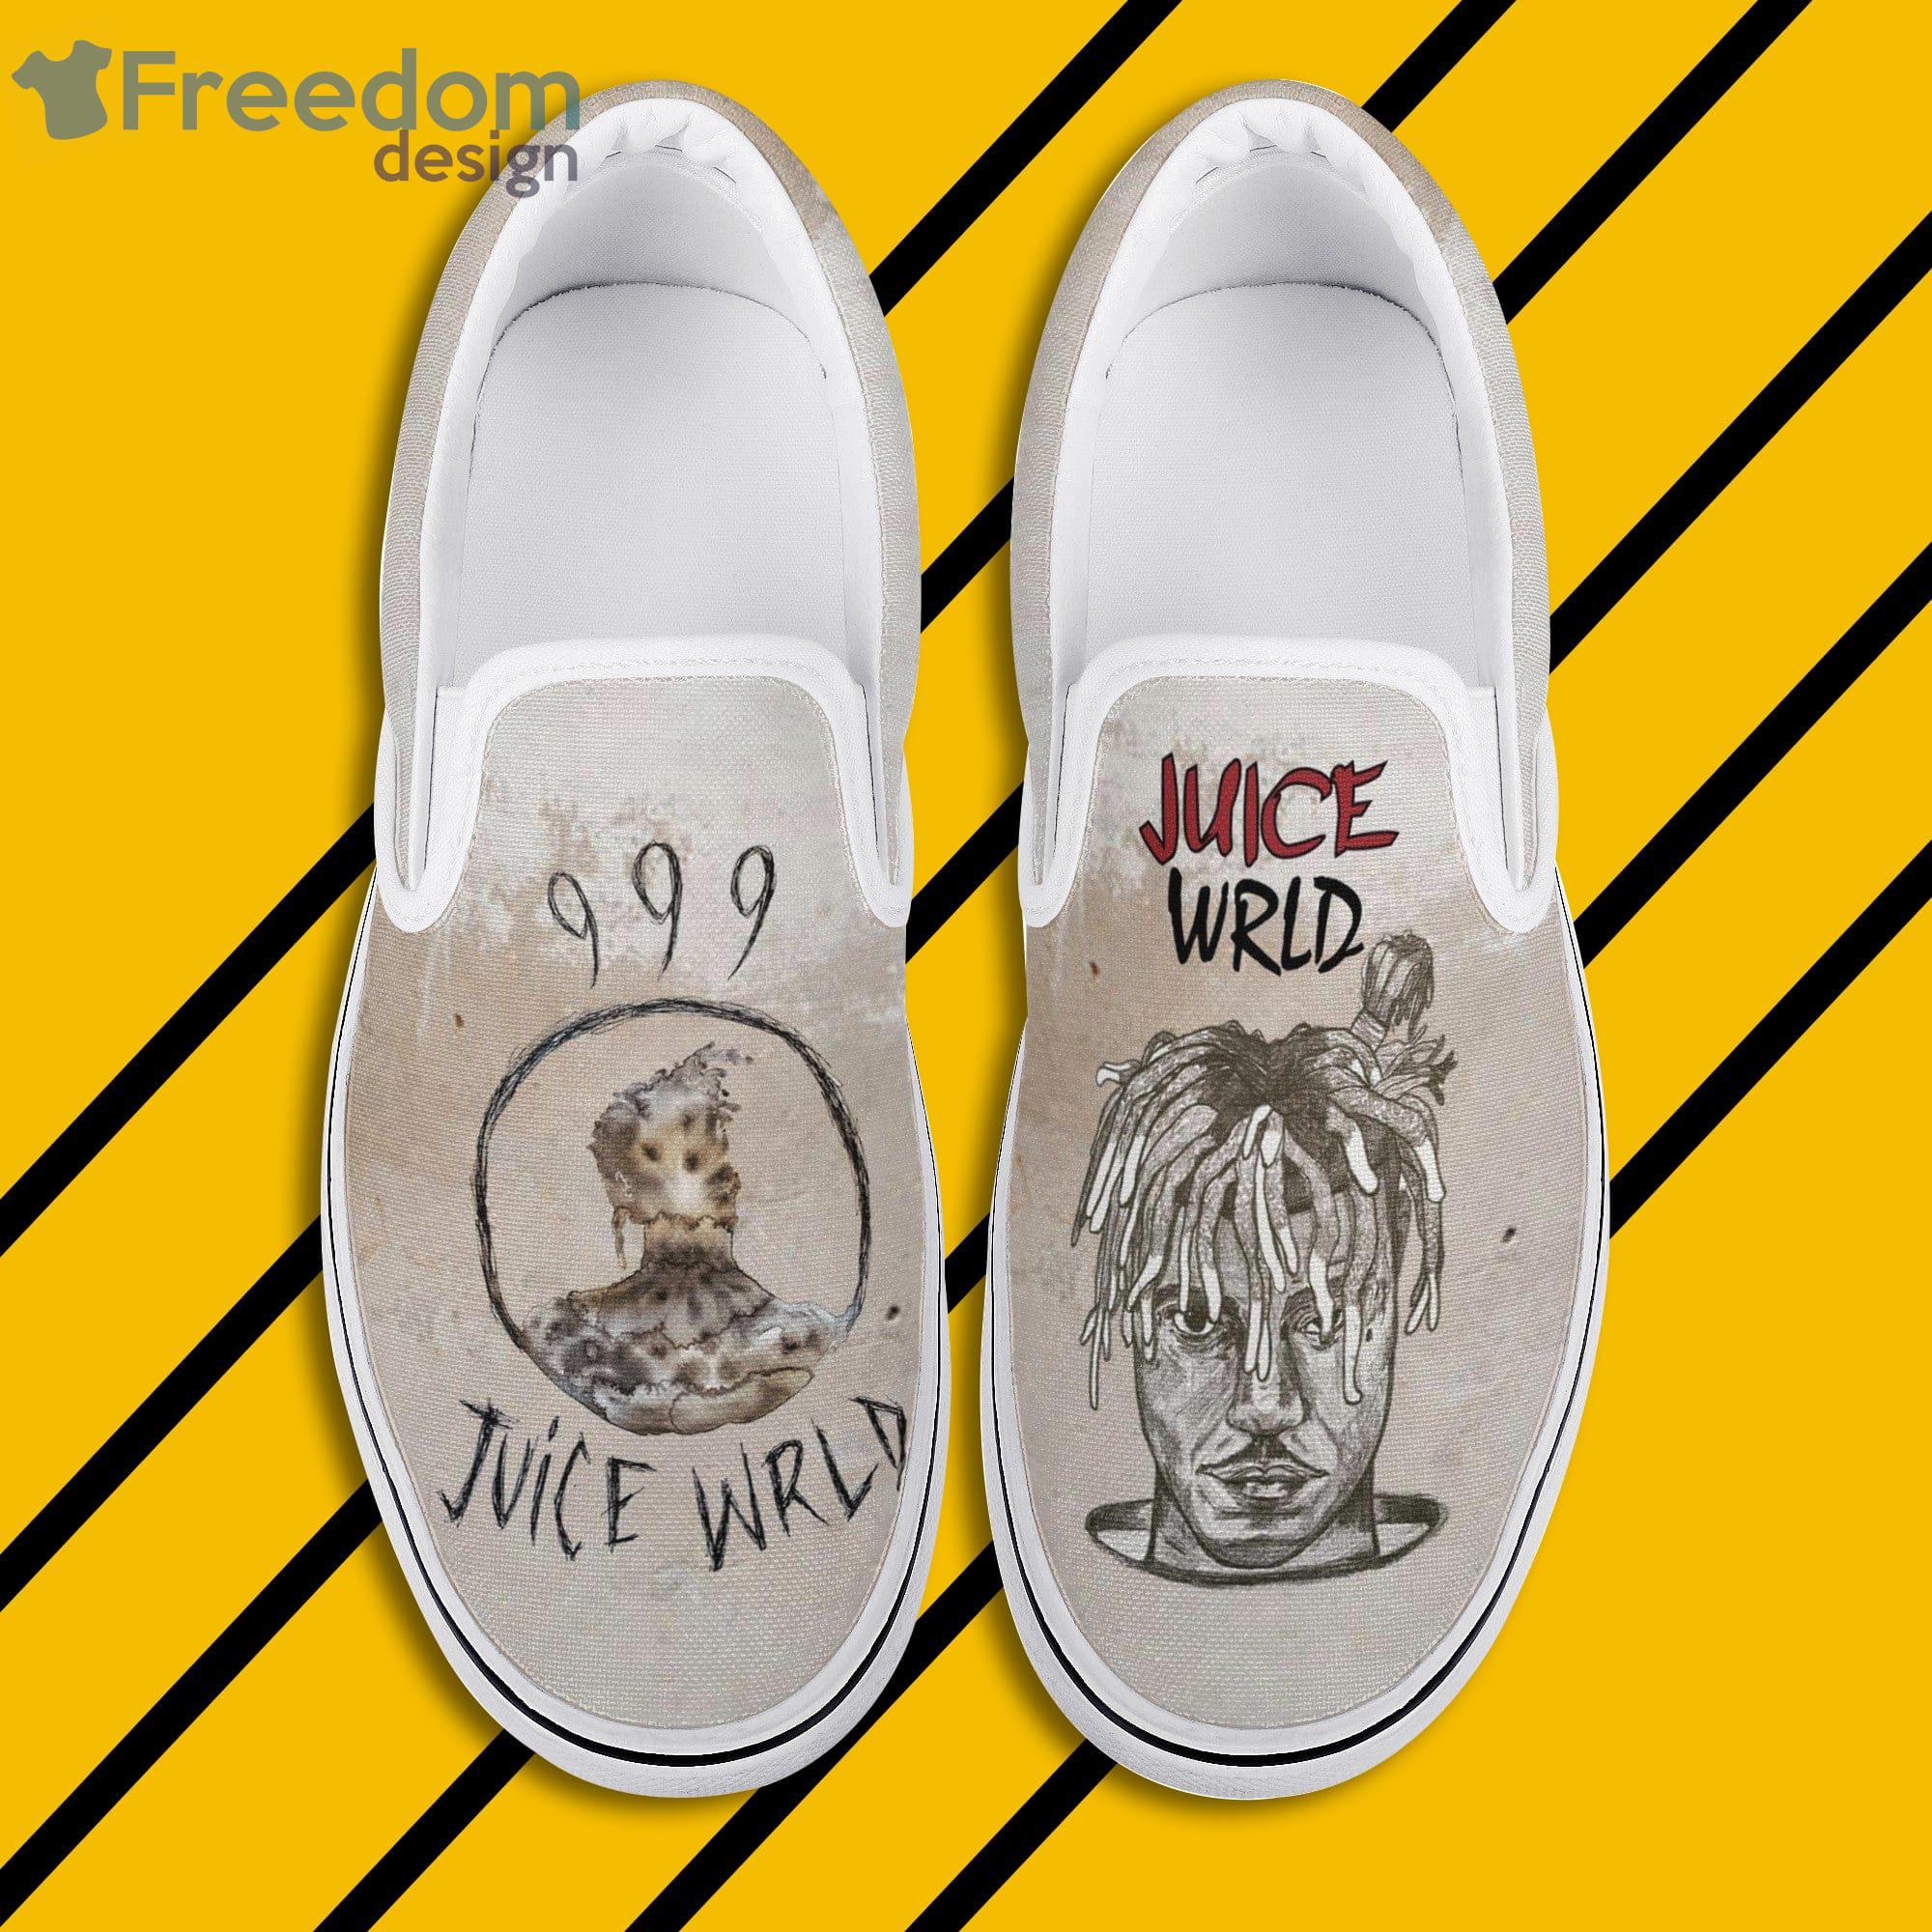 Juice Wrld Art Print Slip On Shoes For Men And Women - Freedomdesign